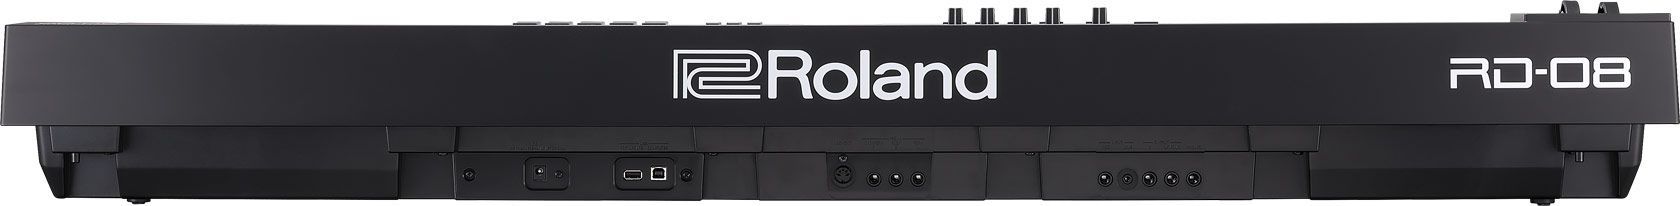 Roland RD-08 Stagepiano mit riesiger Soundauswahl, PHA 4 Hammermechanik